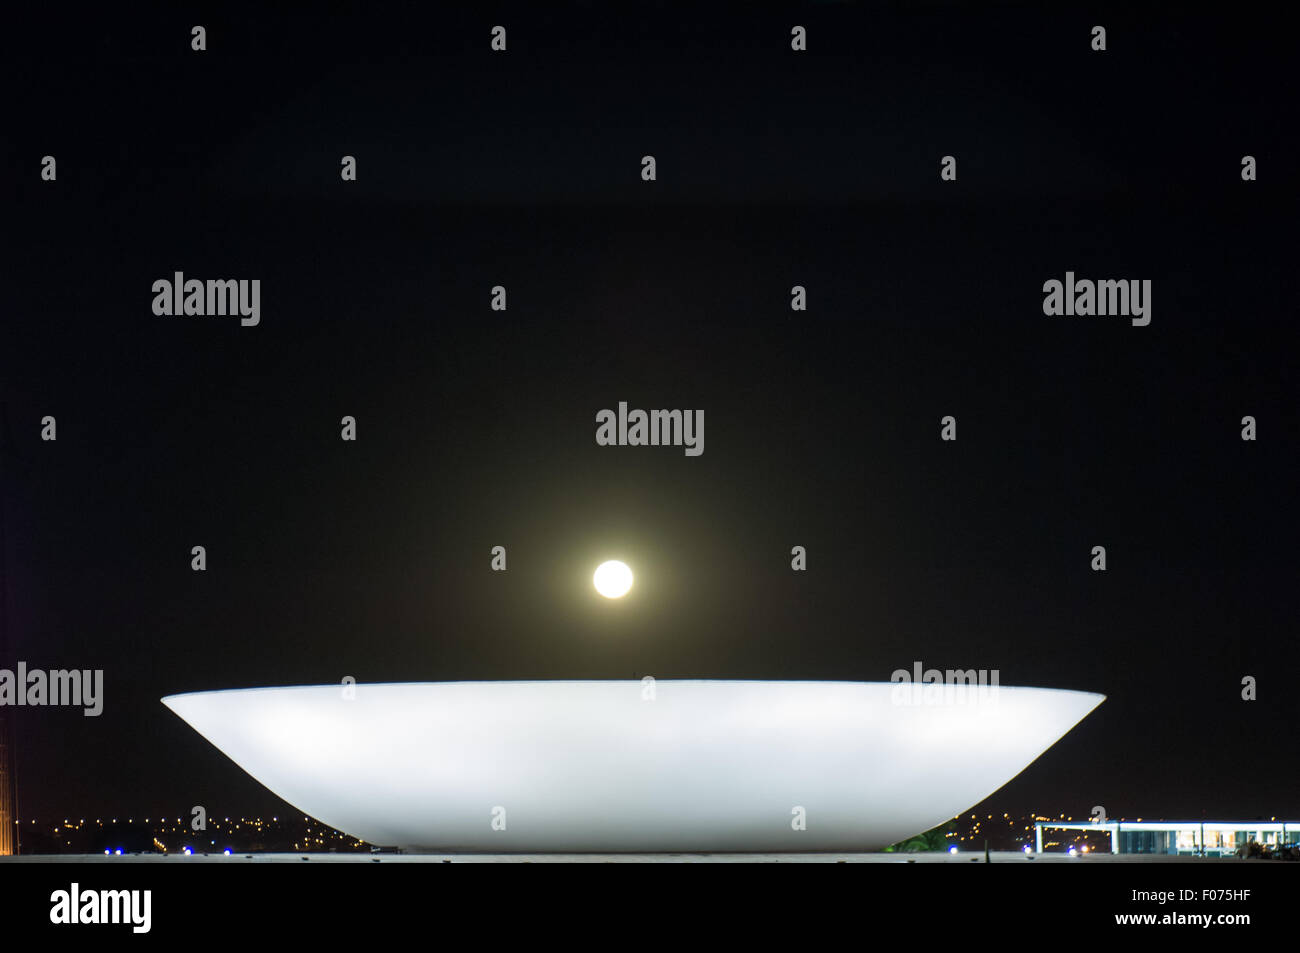 Brasilia DF, Brasile. Congresso Nazionale di edifici da parte dell'architetto Oscar Niemeyer; il piatto di notte con la luna piena a basso su di esso. Praça dos Tres Poderes. Foto Stock